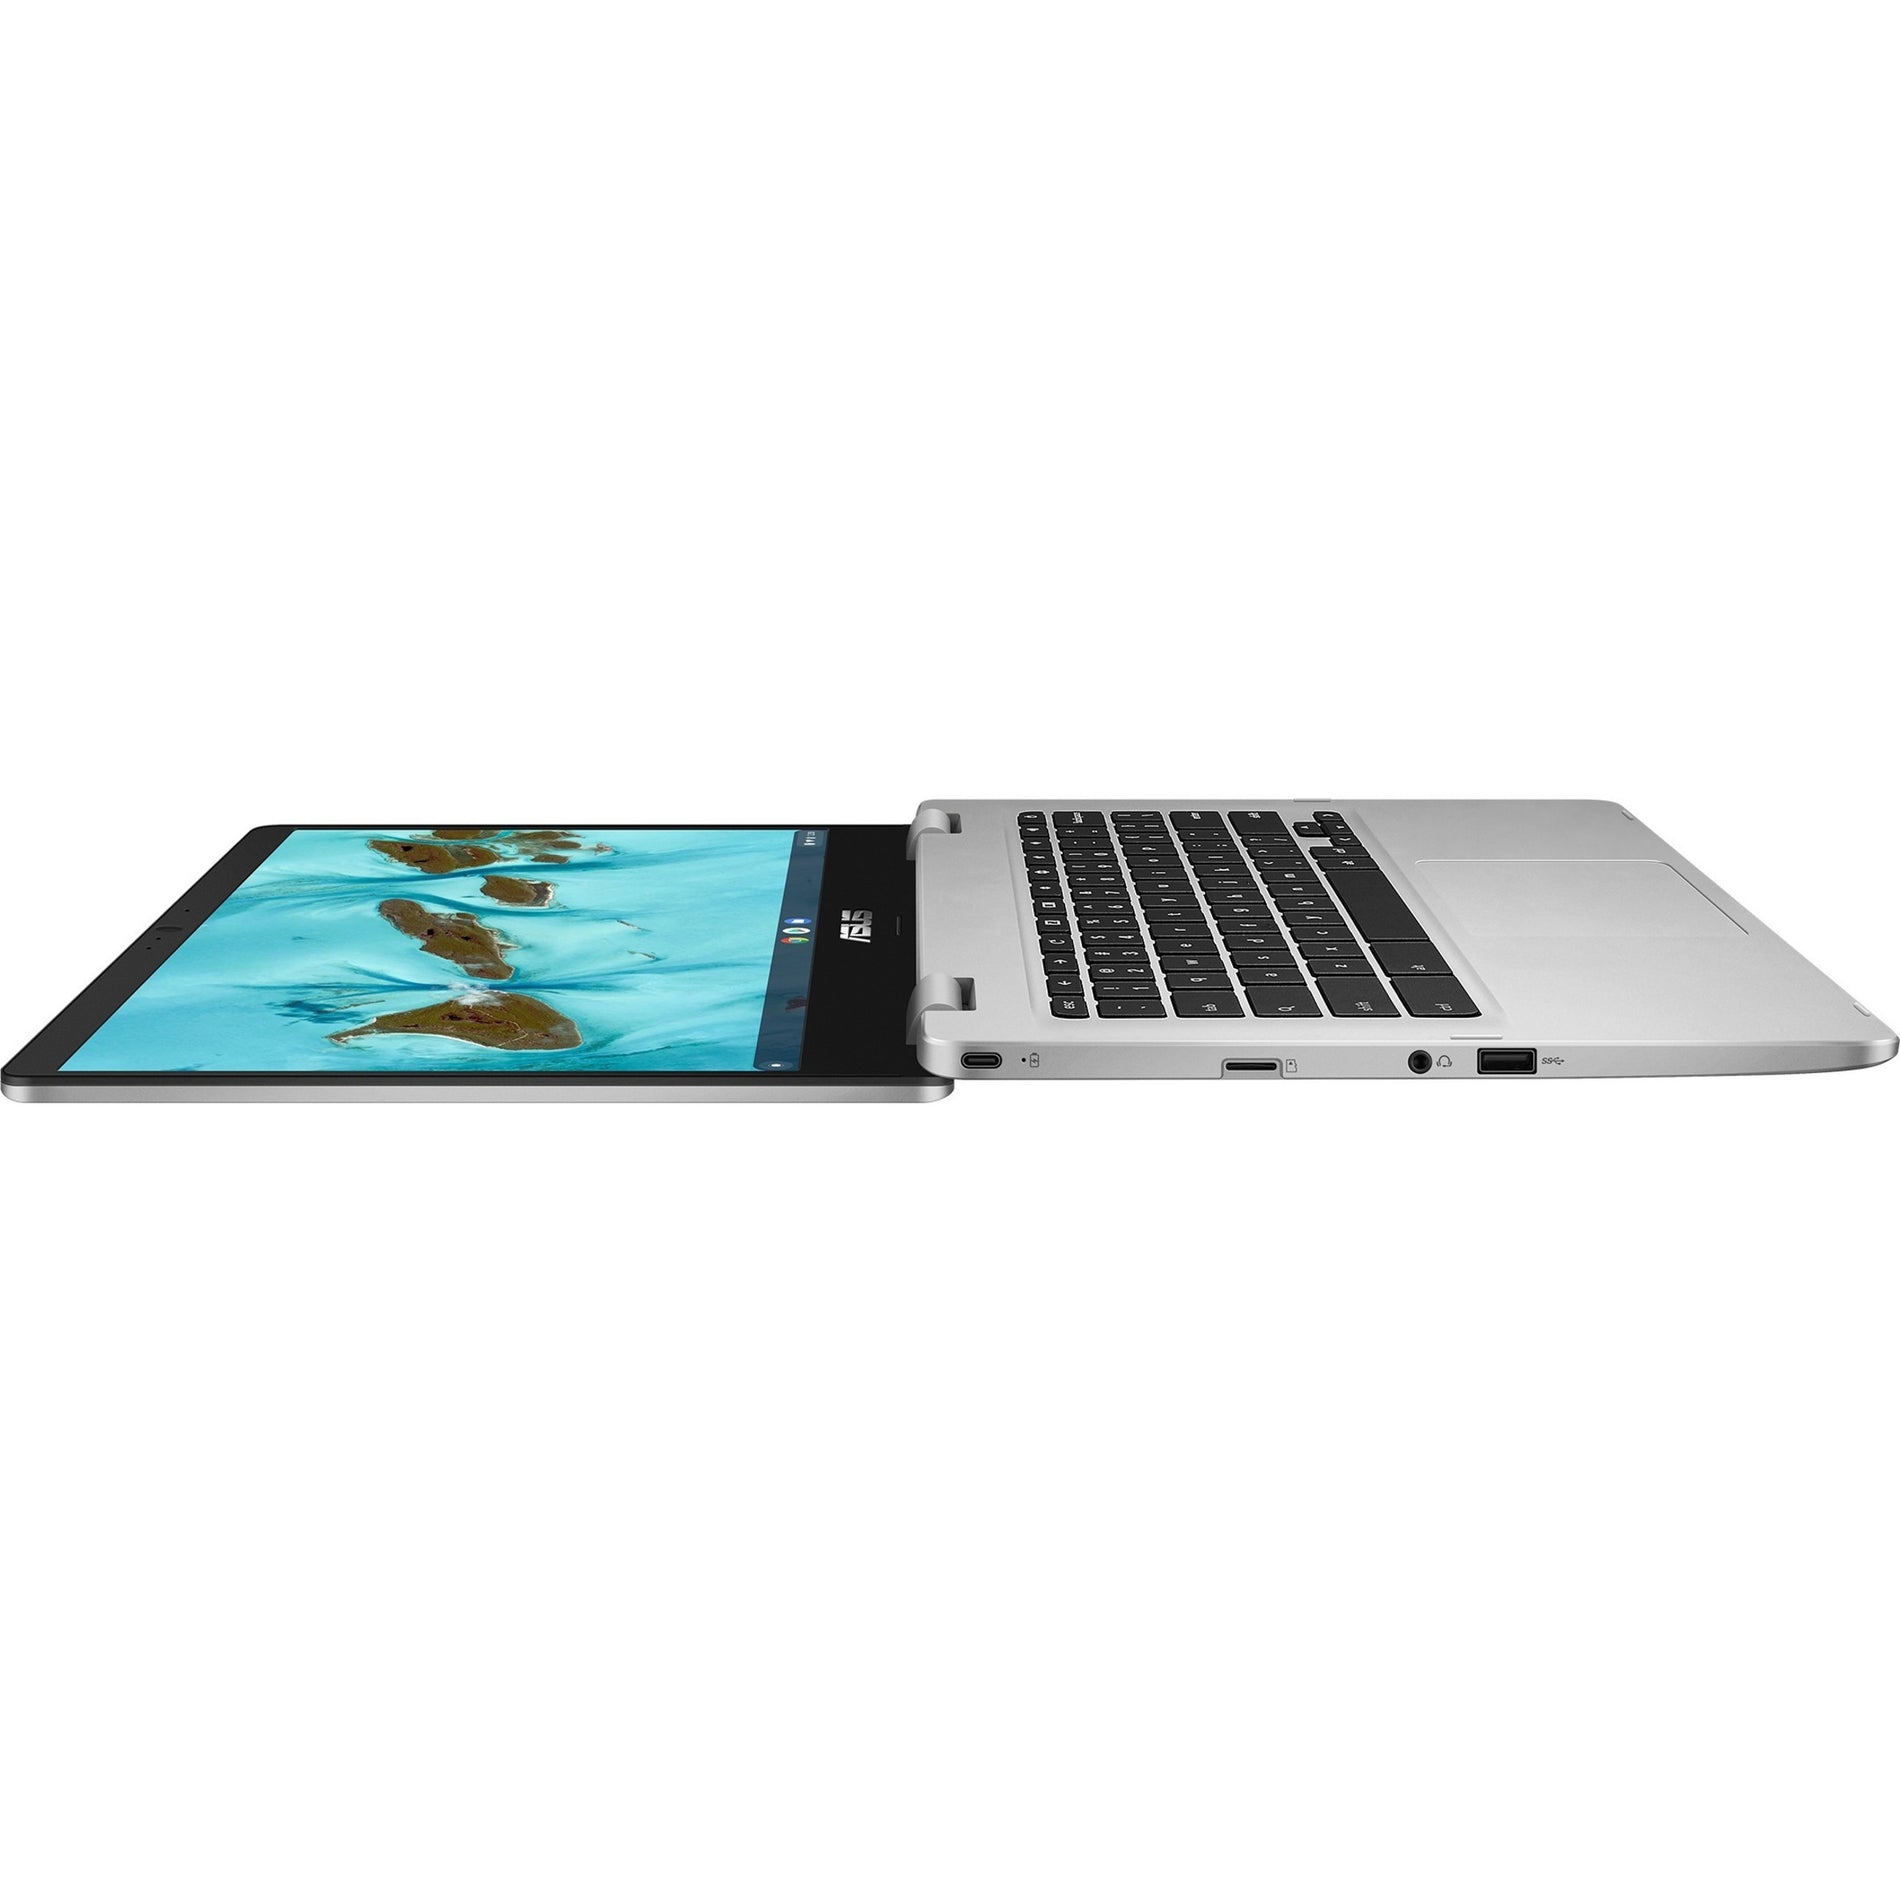 华硕 C424MA-WH44F Chromebook 14英寸全高清，英特尔赛扬N4020，4GB RAM，64GB闪存，ChromeOS